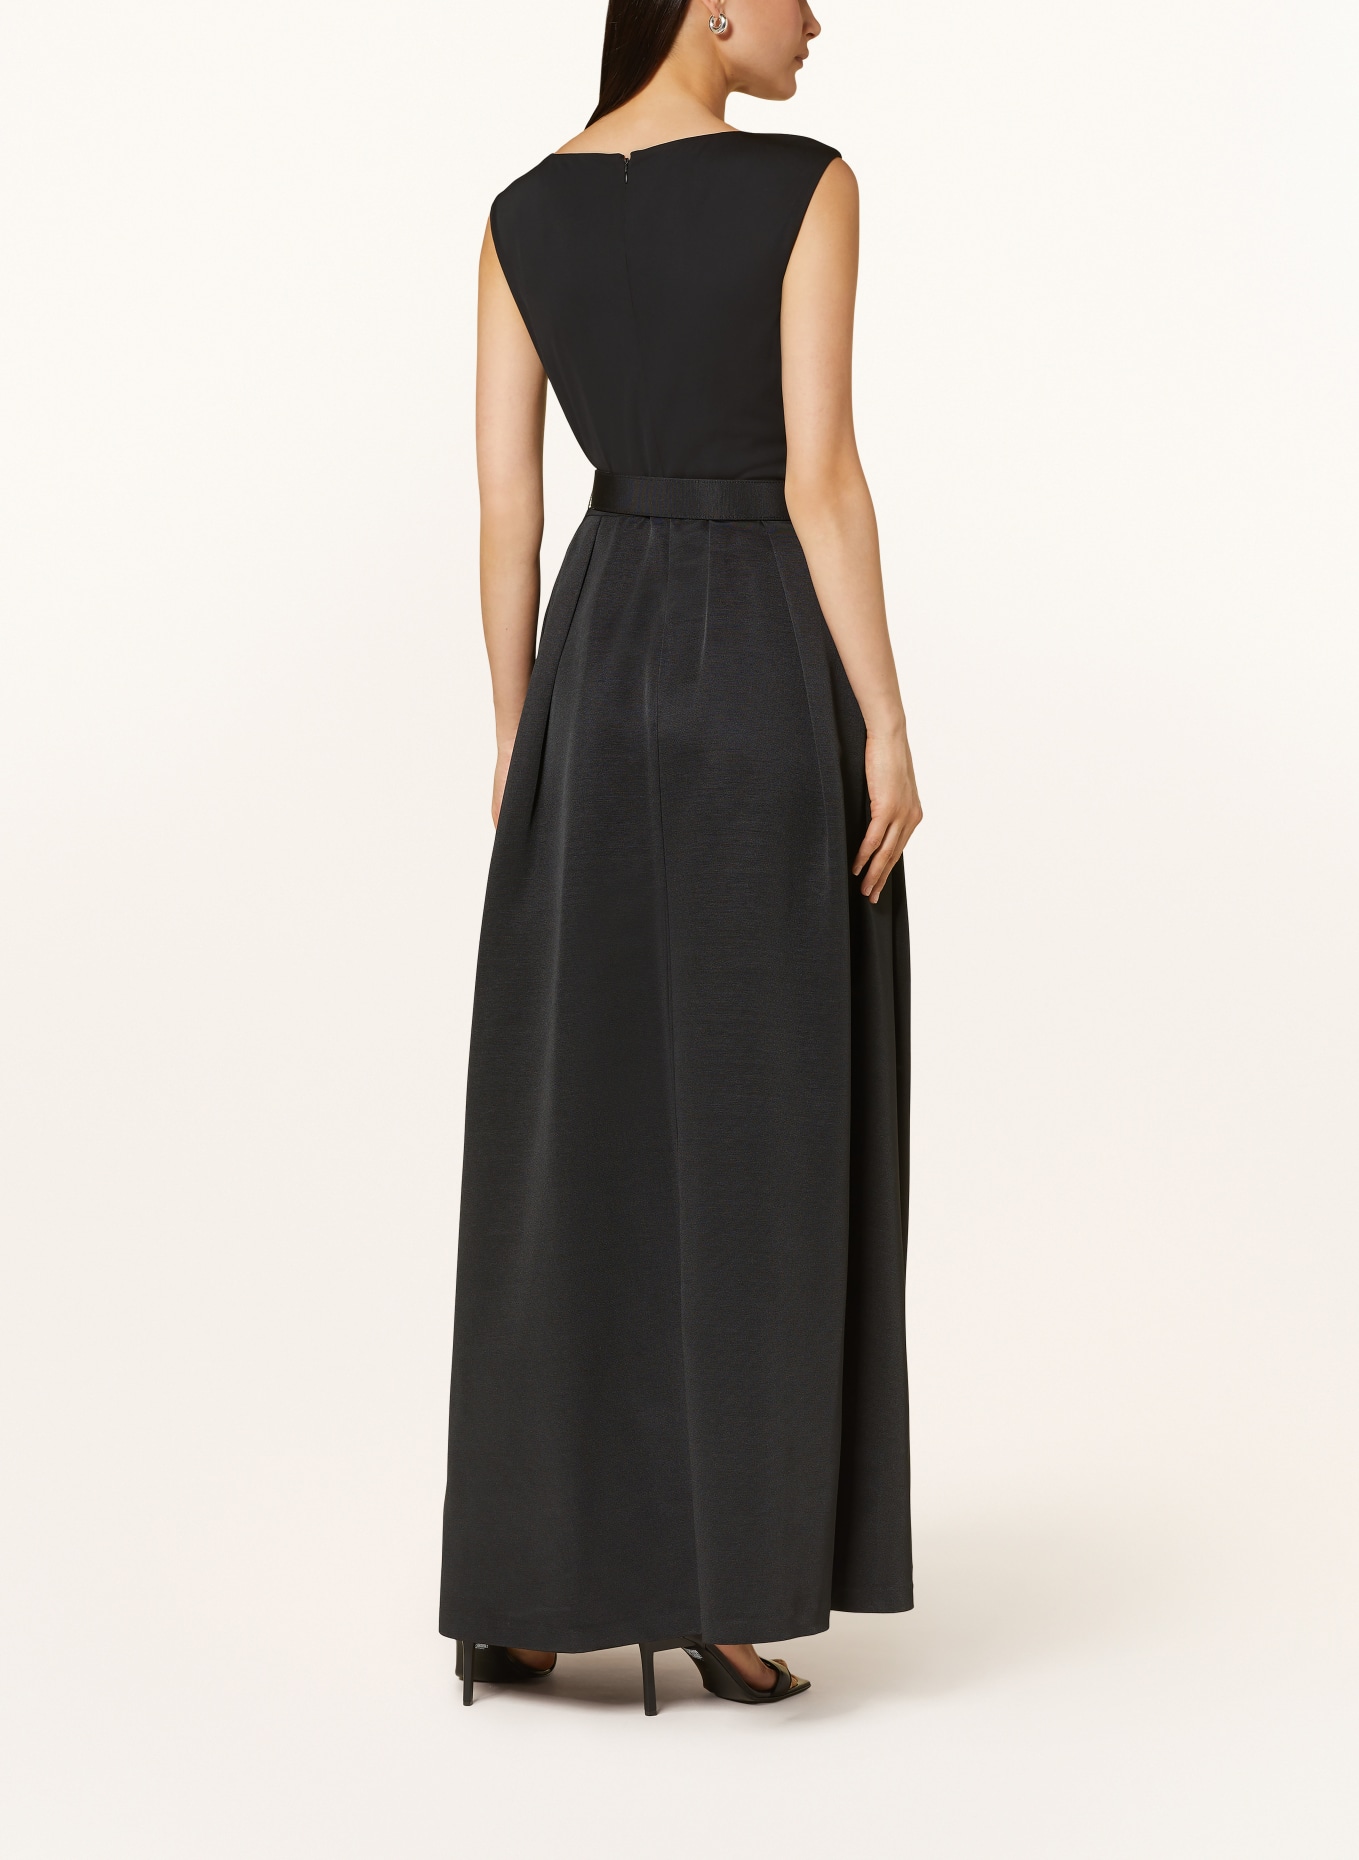 LAUREN RALPH LAUREN Evening dress NOELLA in mixed materials , Color: BLACK (Image 3)